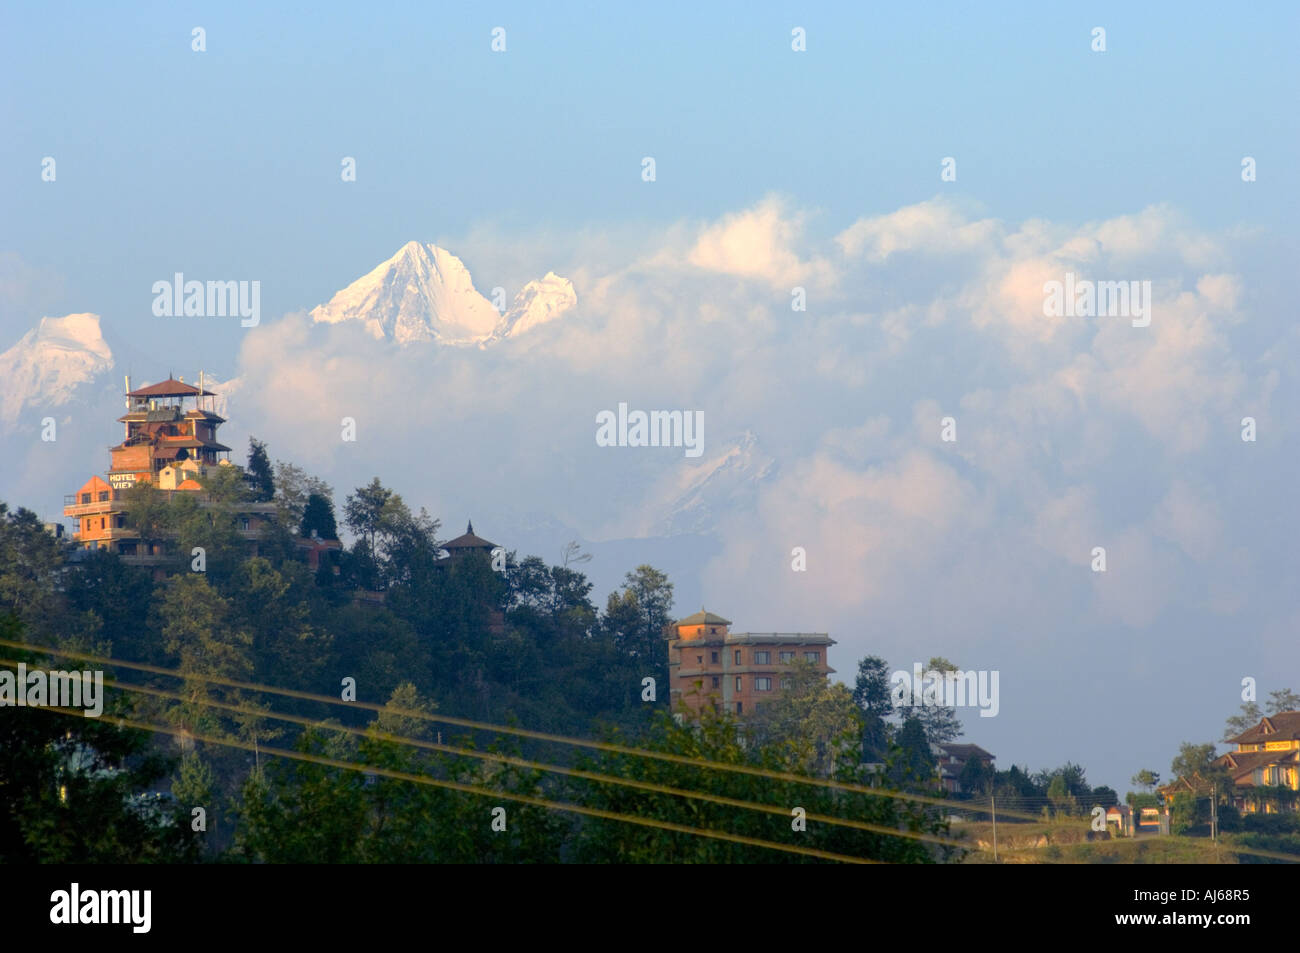 NAGARKOT HIMALAYAN Resort mountain chaîne de collines vallée de Katmandou vale dale glen Asie Népal Katmandou dell anapurna coucher du soleil Banque D'Images